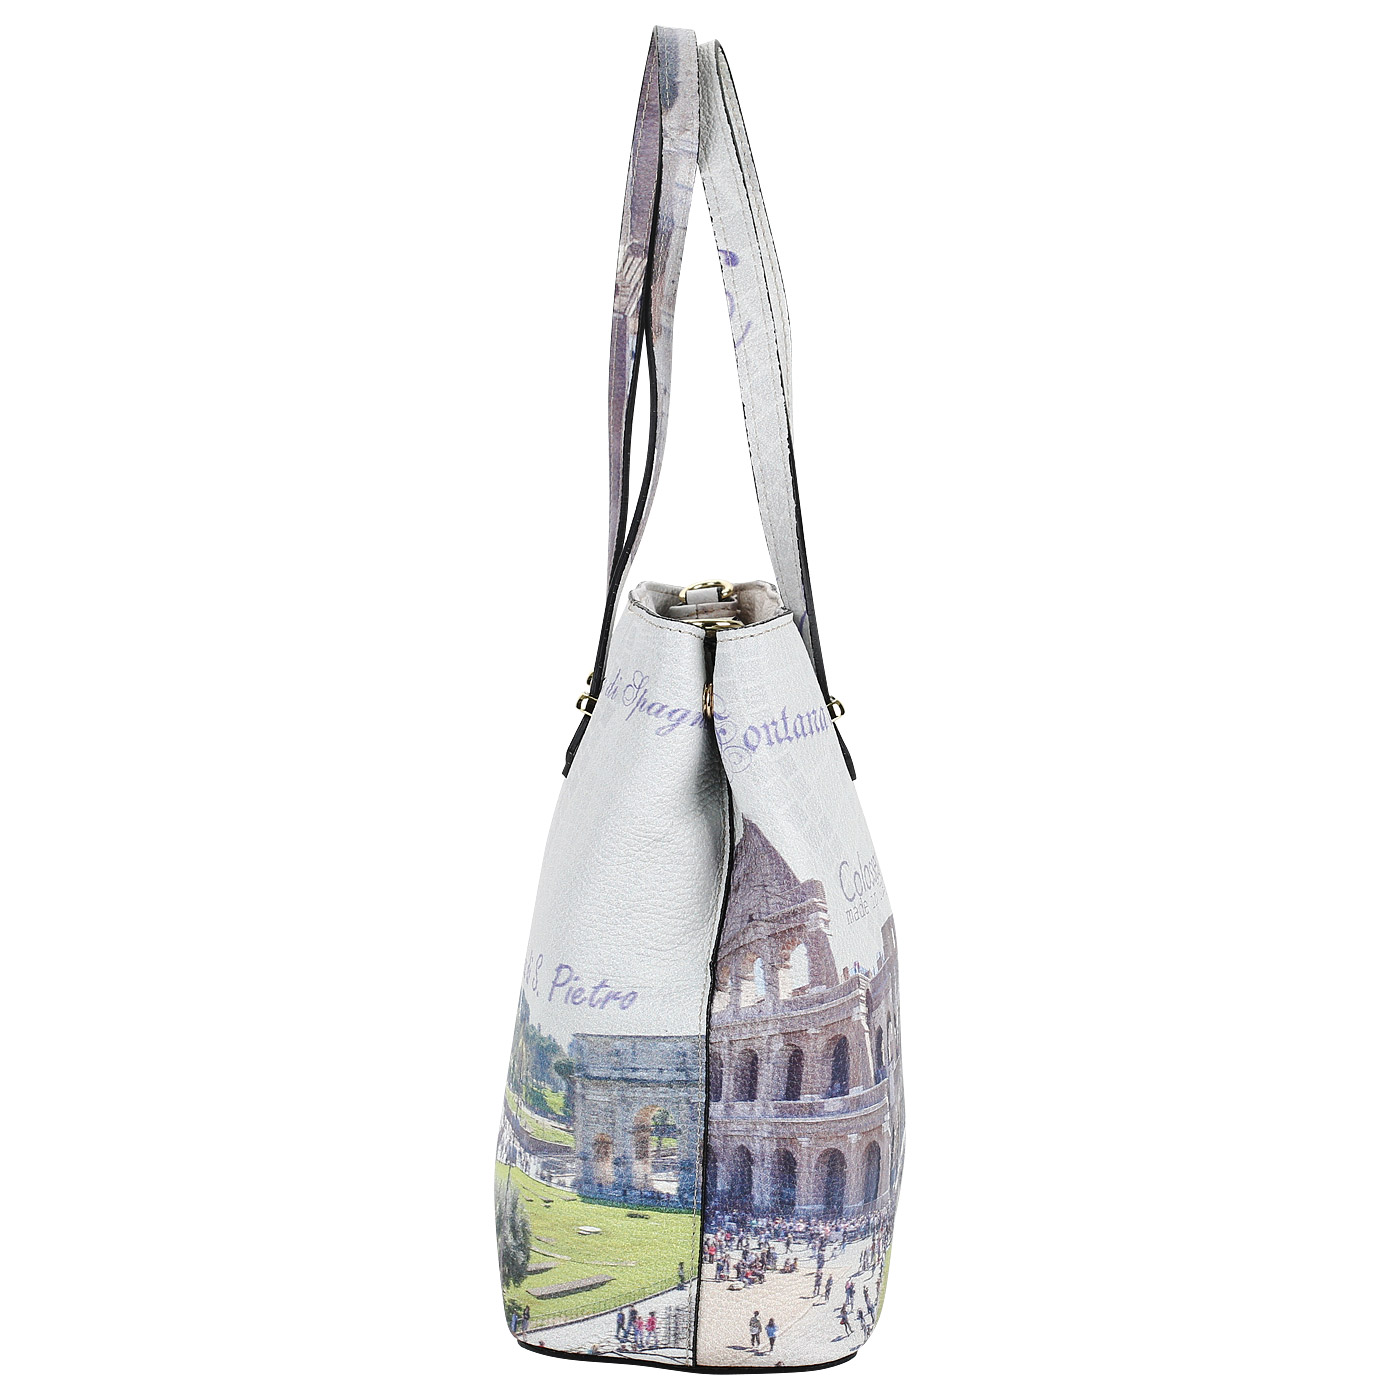 Кожаная женская сумка с длинными ручками Acquanegra Colosseo